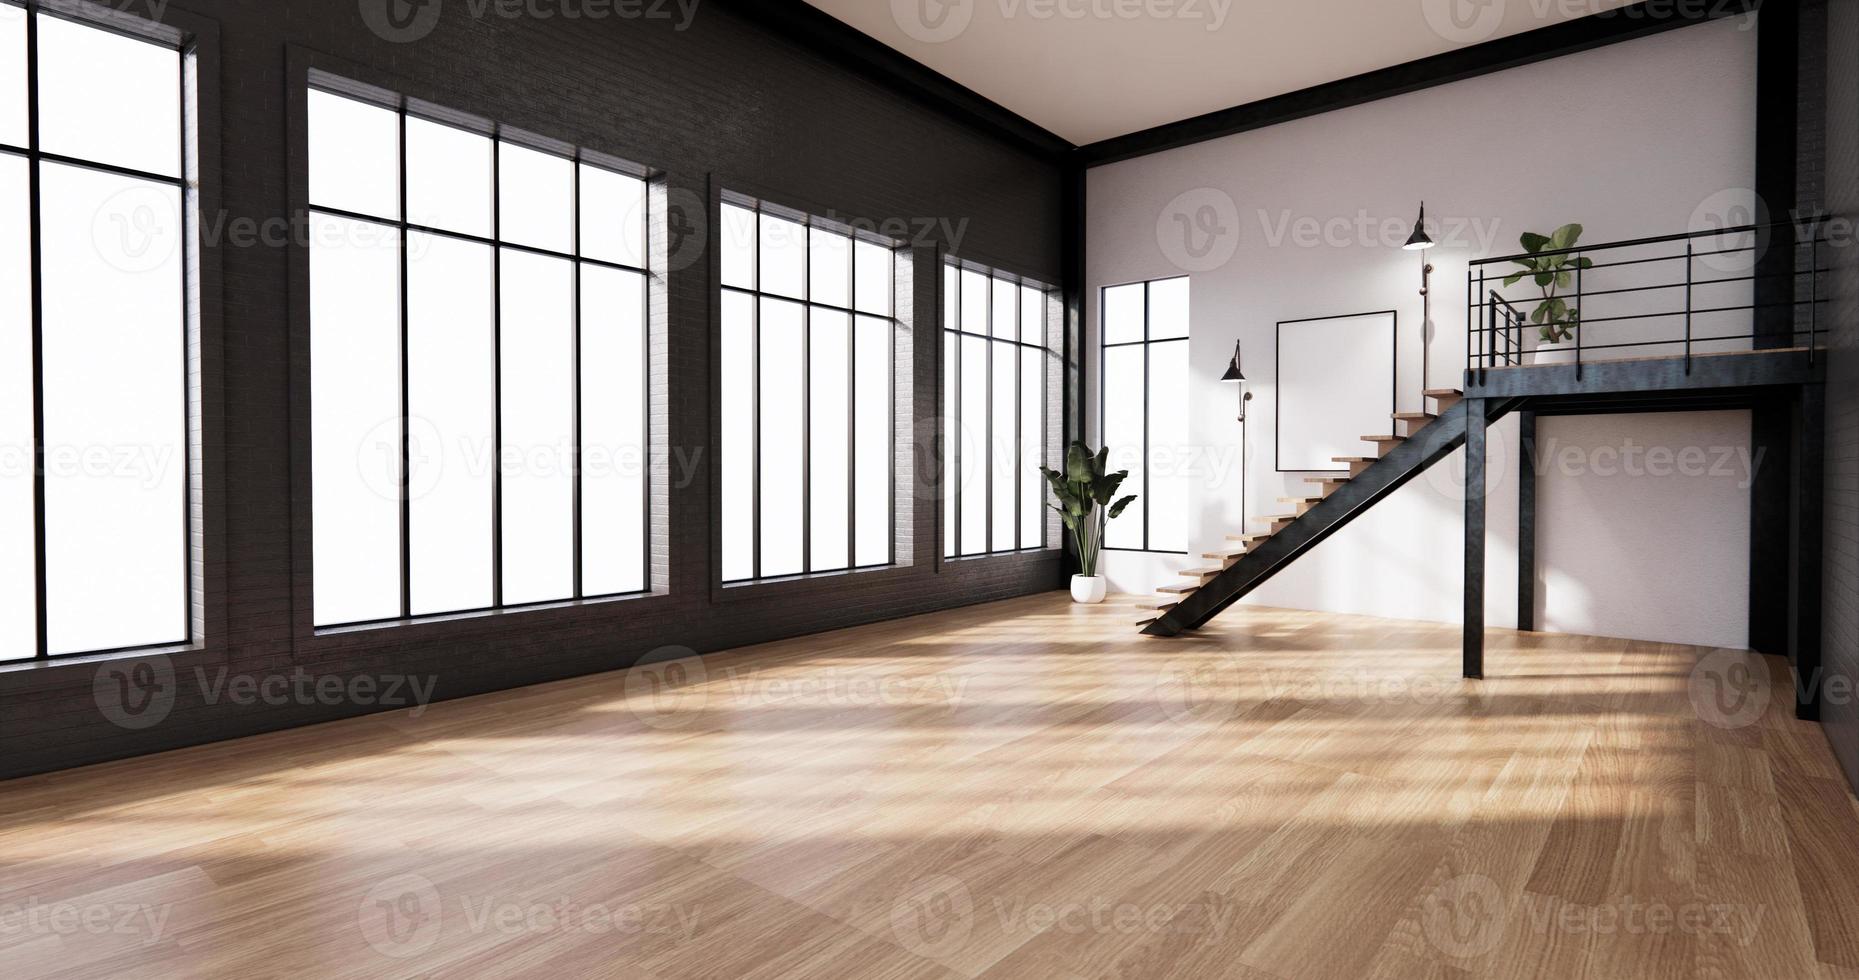 Das Interieur, modernes Wohndesign im Loft-Stil. 3D-Rendering foto